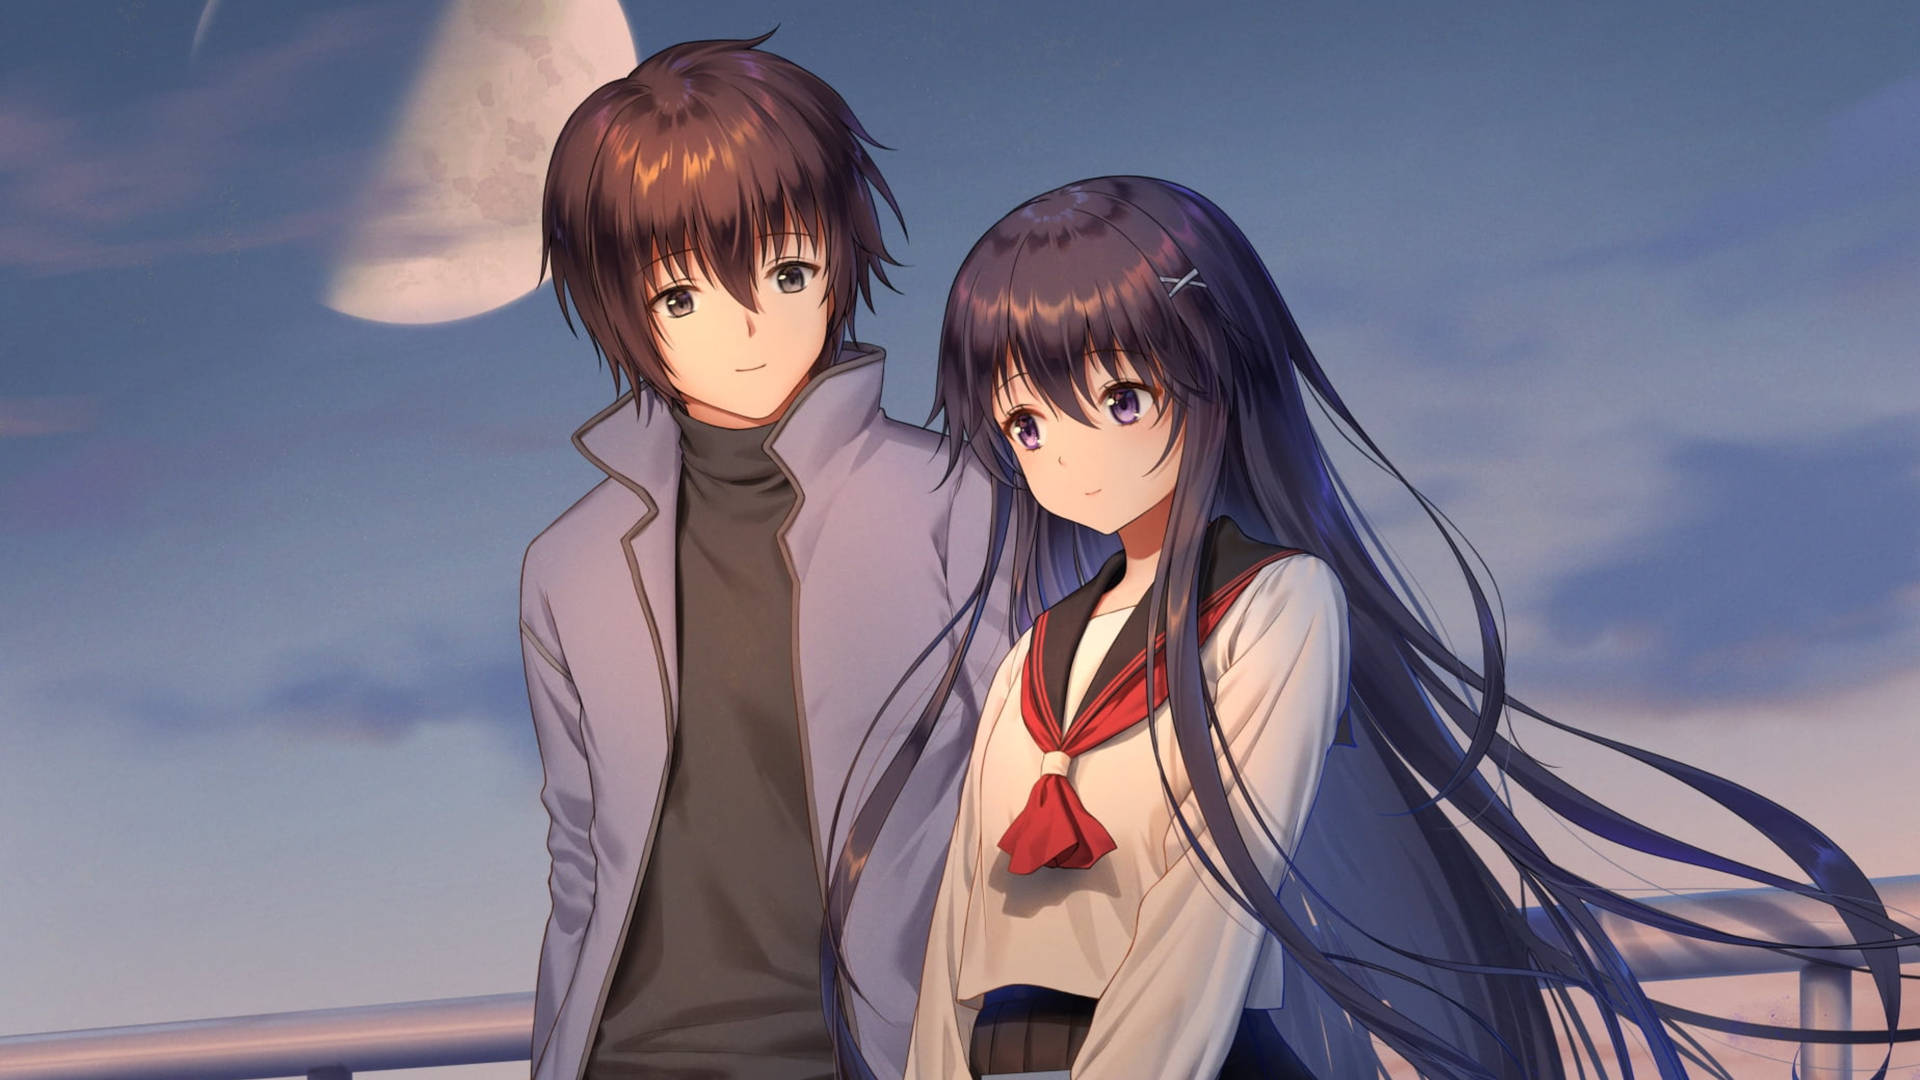 Cute Anime Couple Under Moon